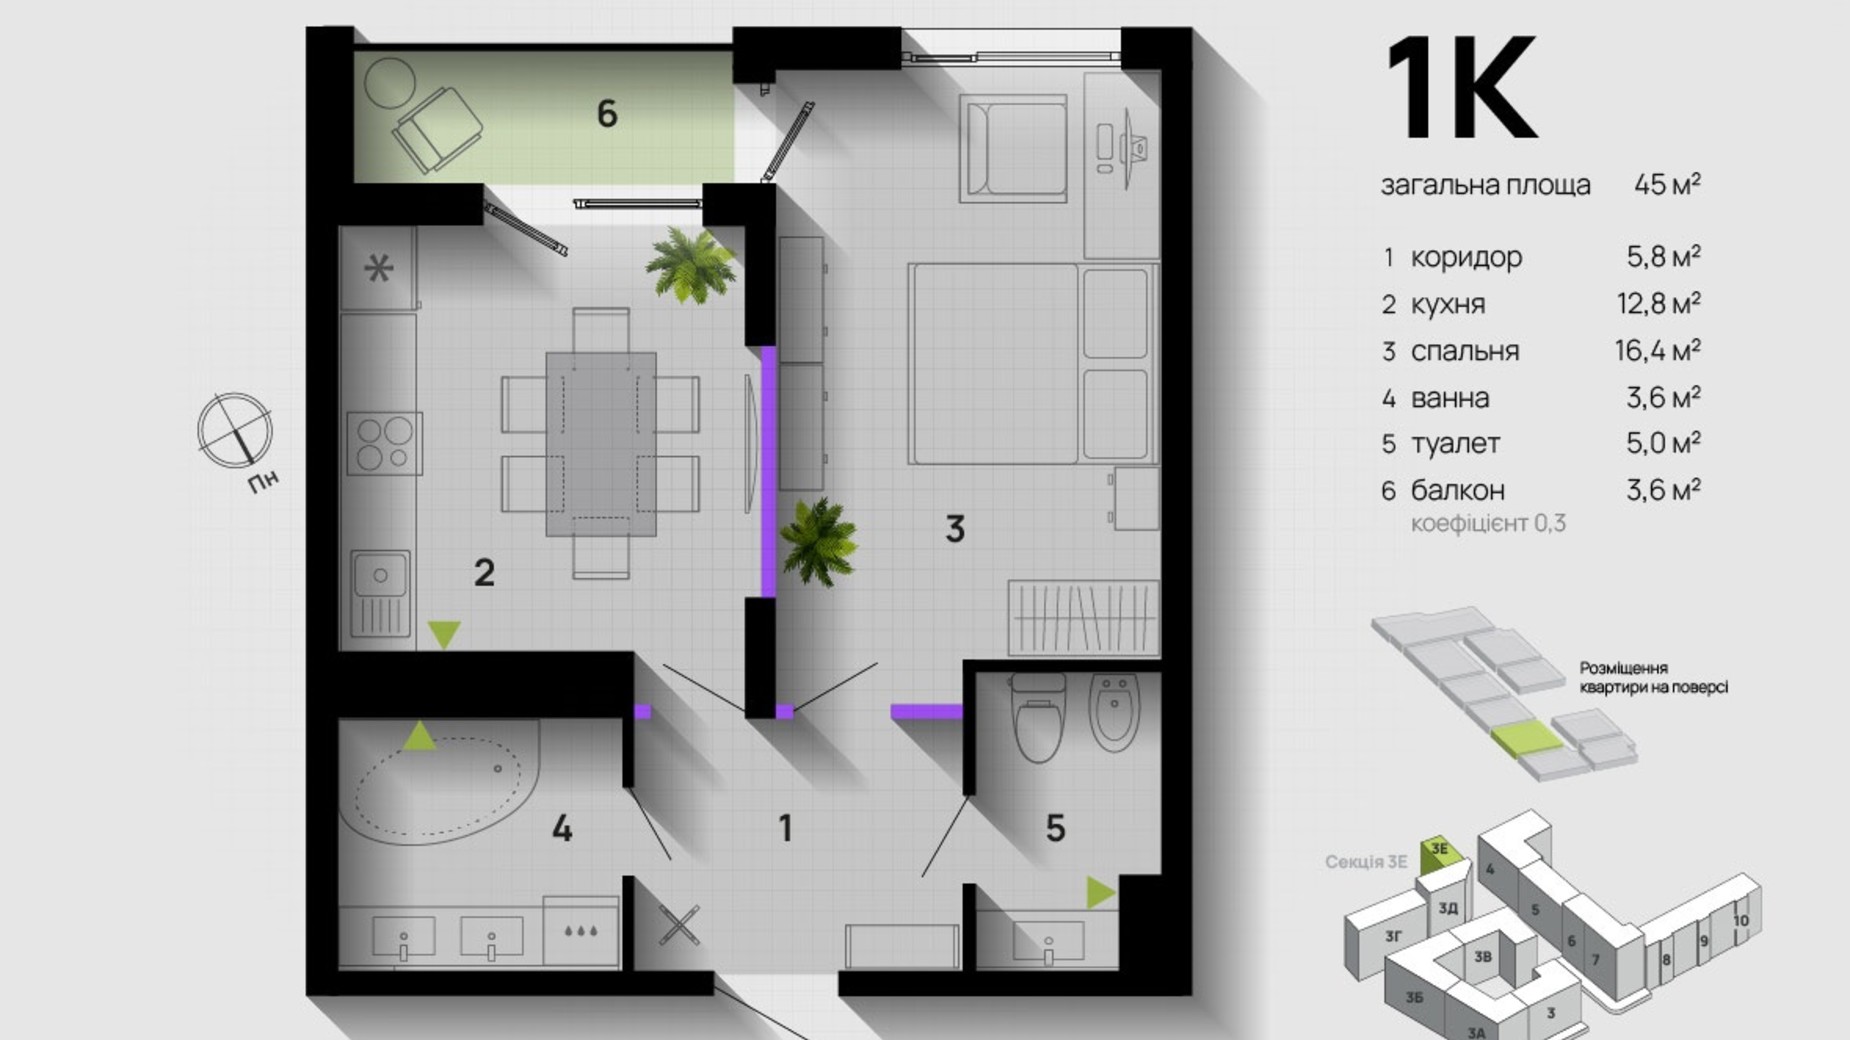 Планировка 1-комнатной квартиры в ЖК Парковая Аллея 45 м², фото 611377